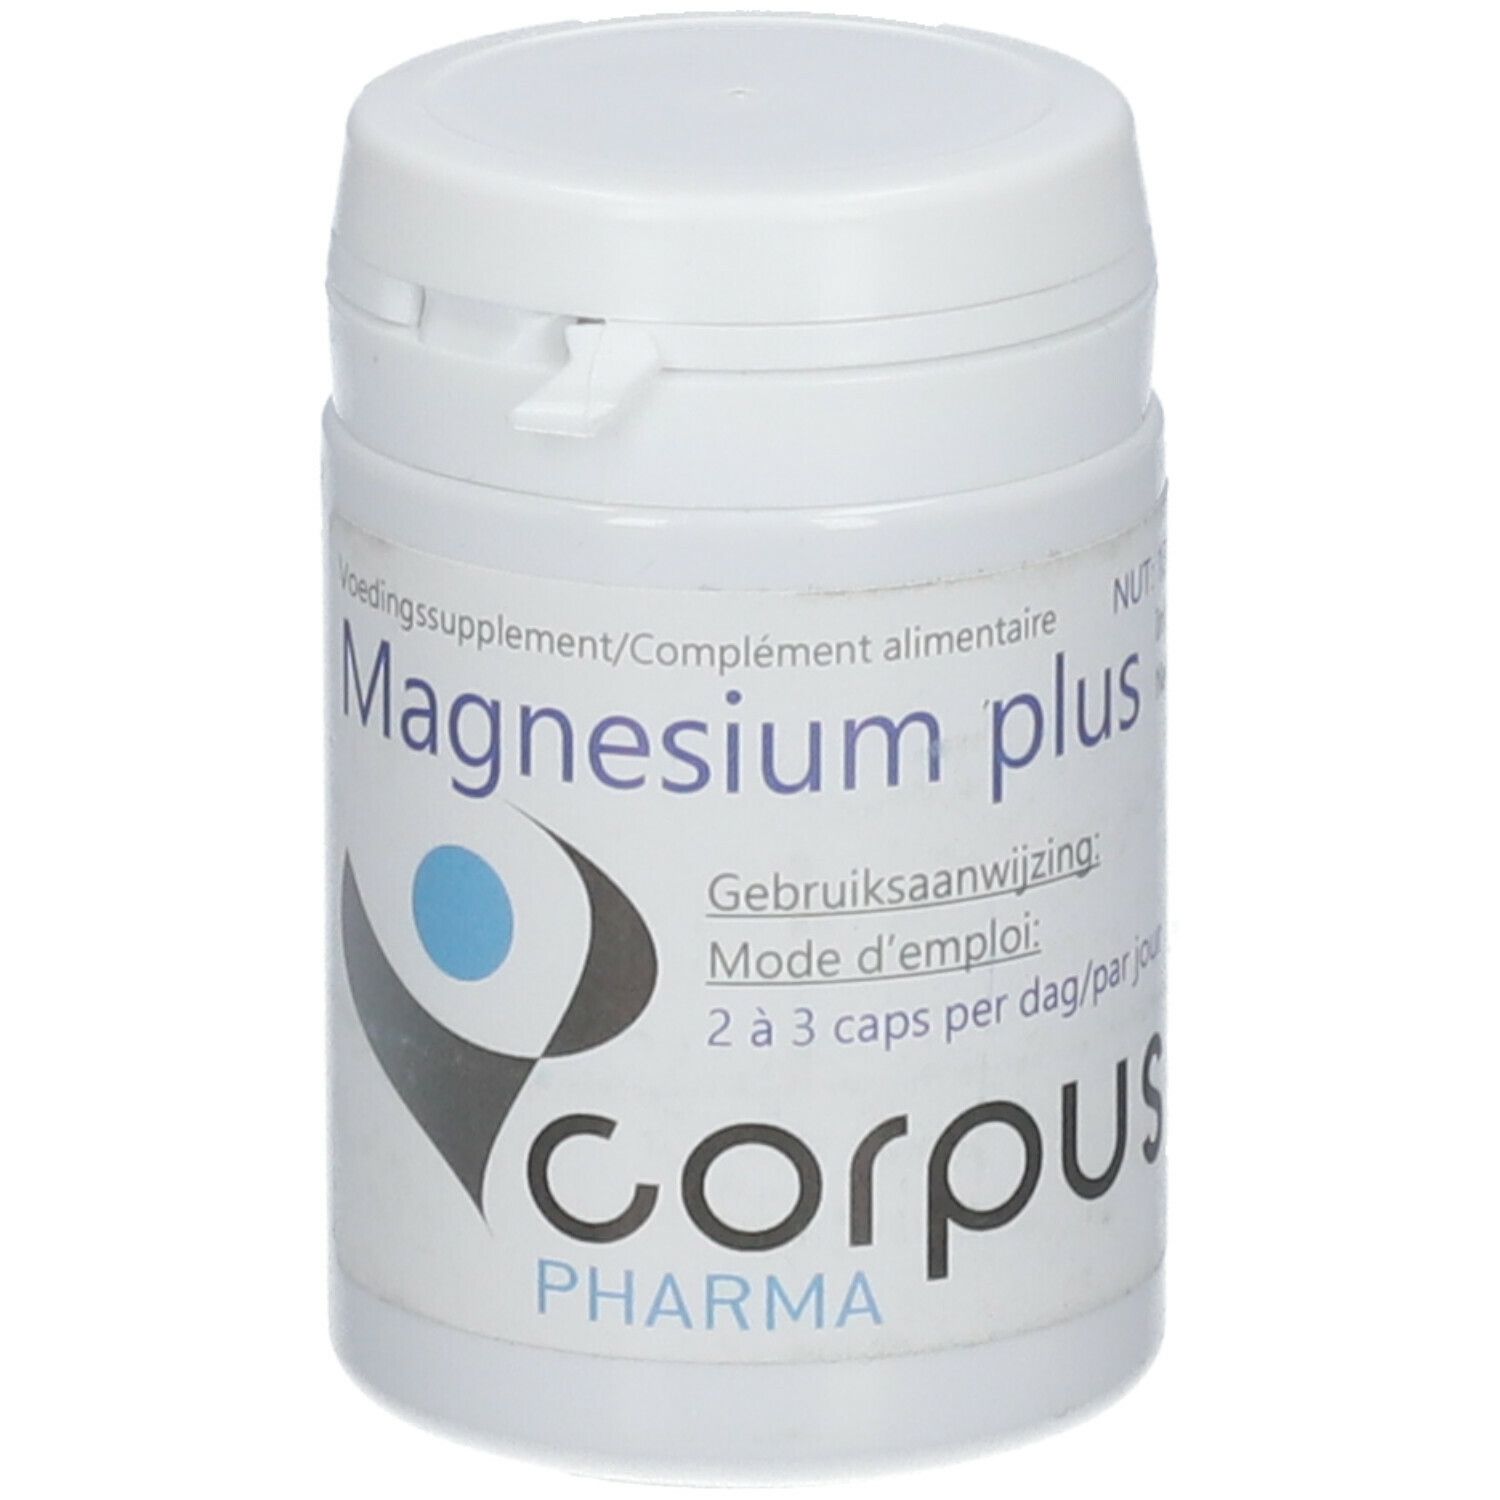 Image of Magnesium Plus